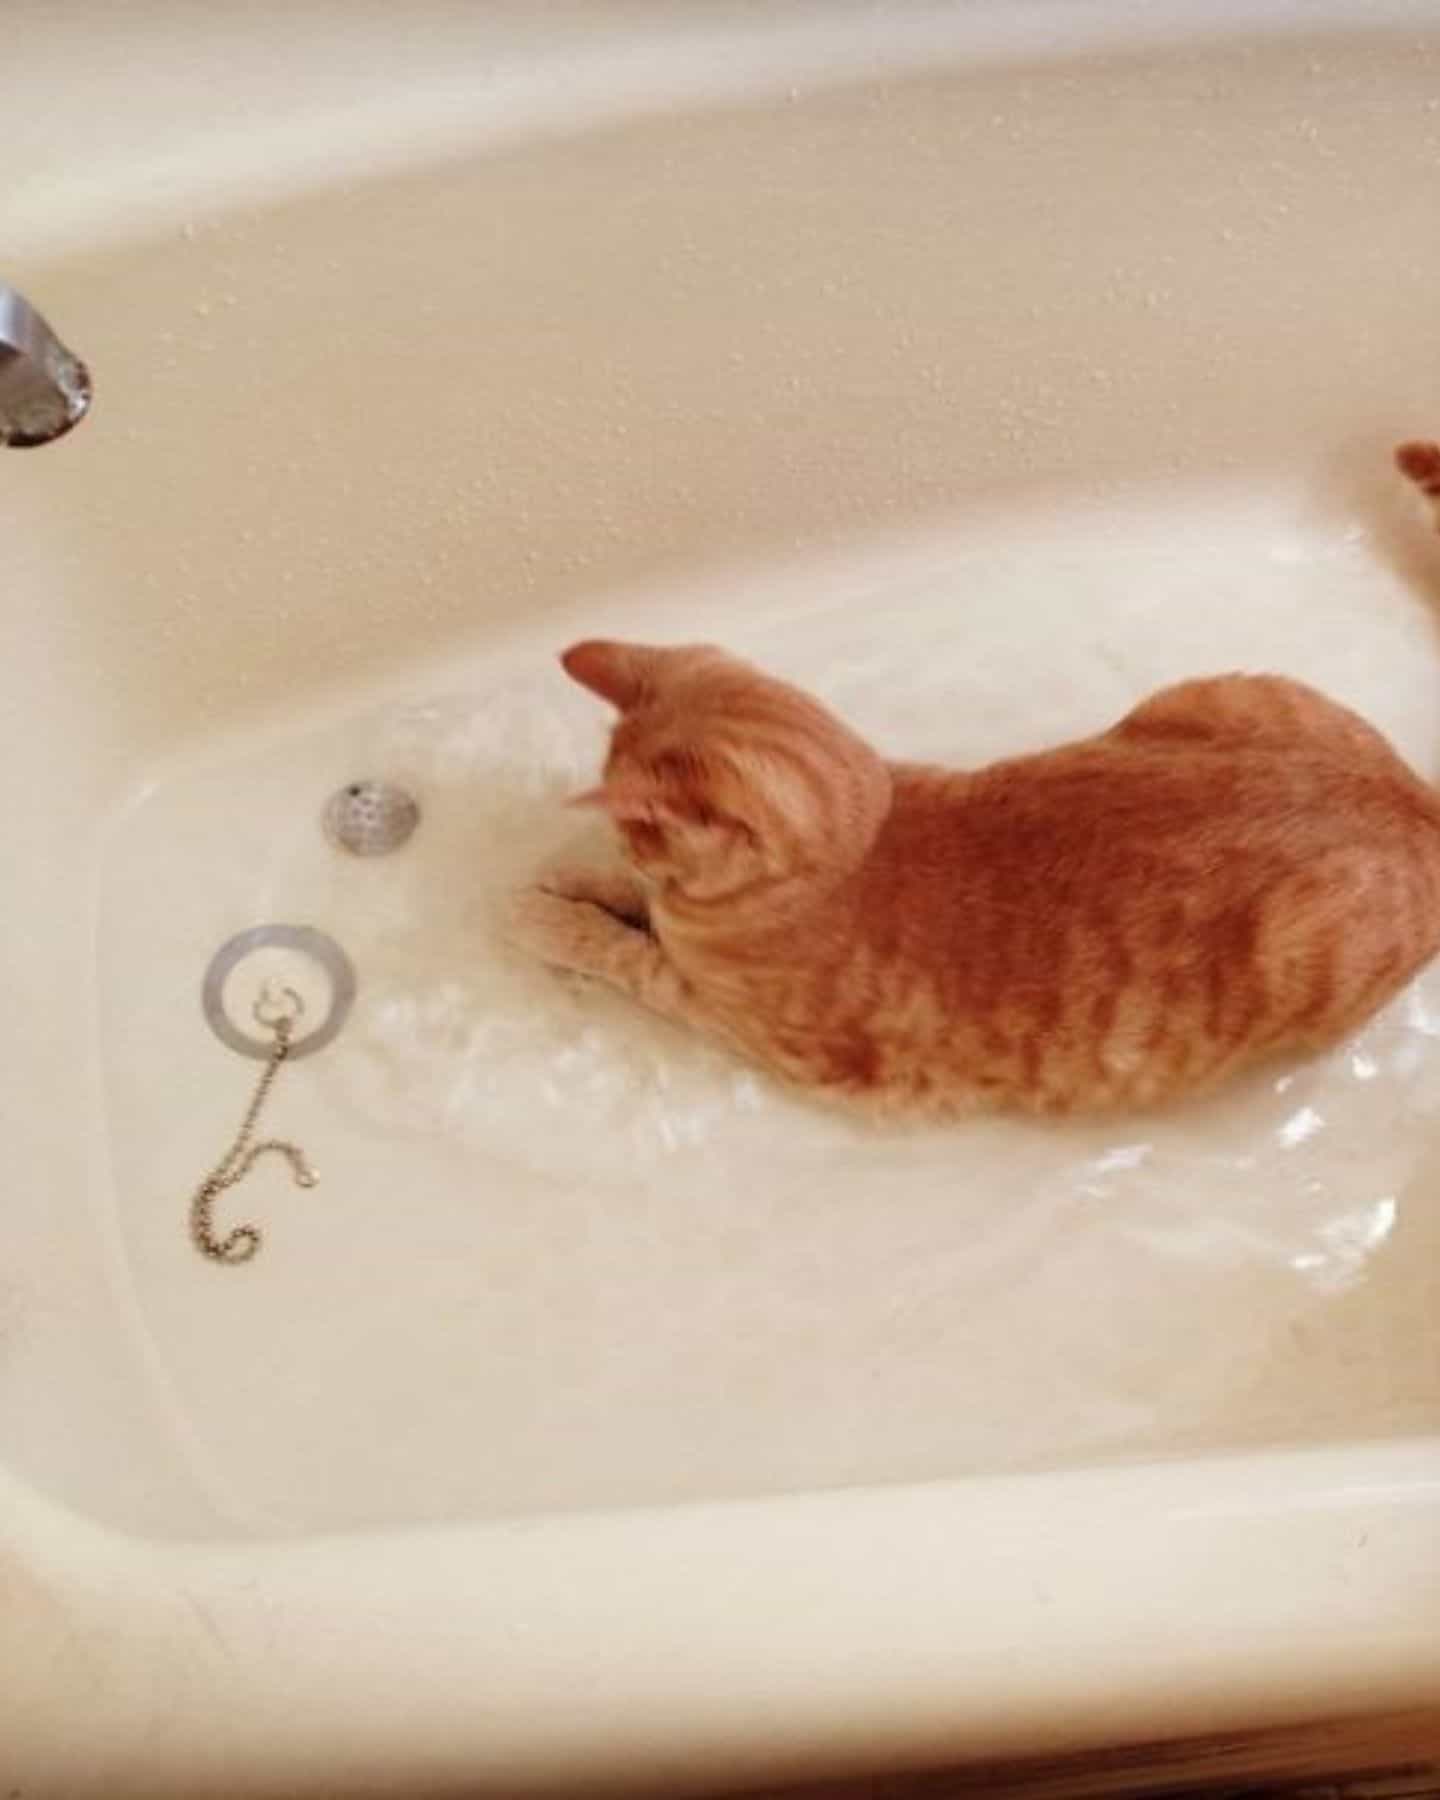 cat in water